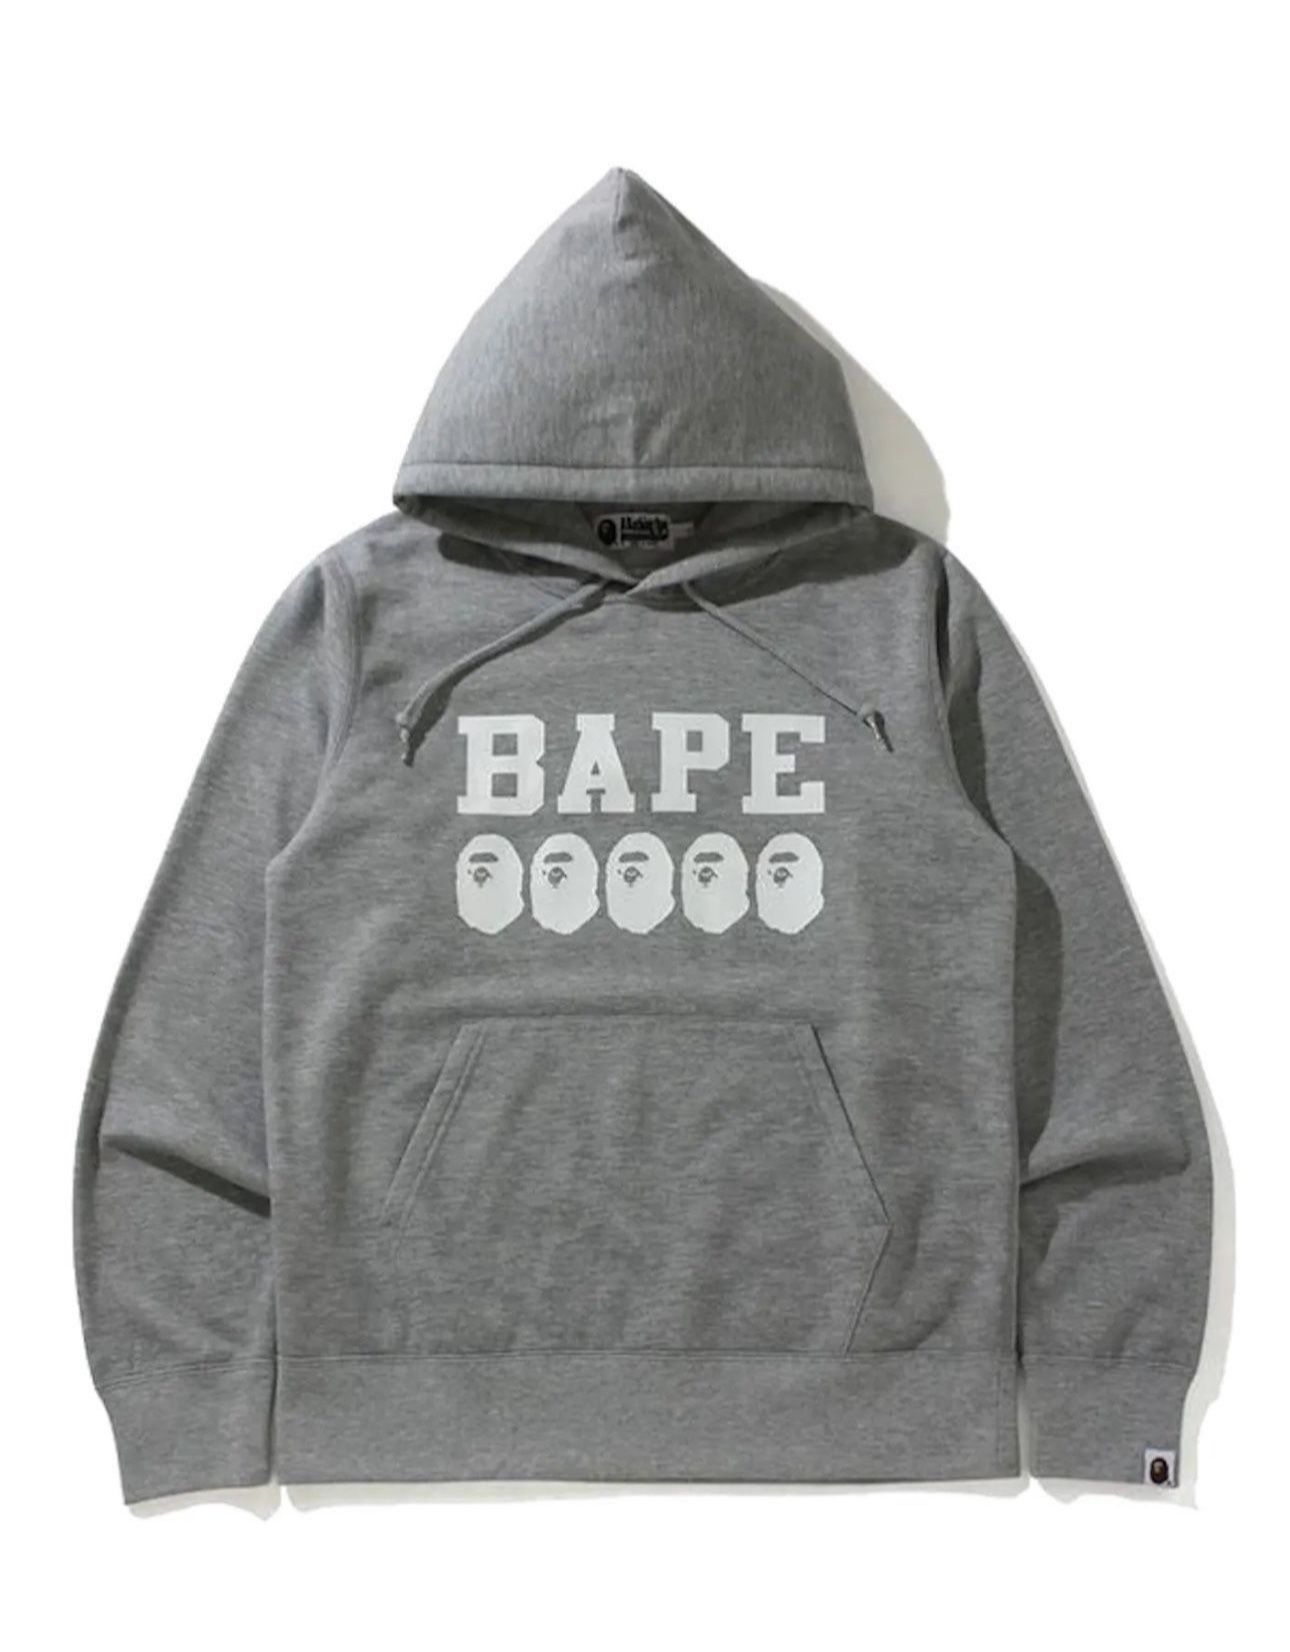 Bape Grey Hoodie 2022 Release